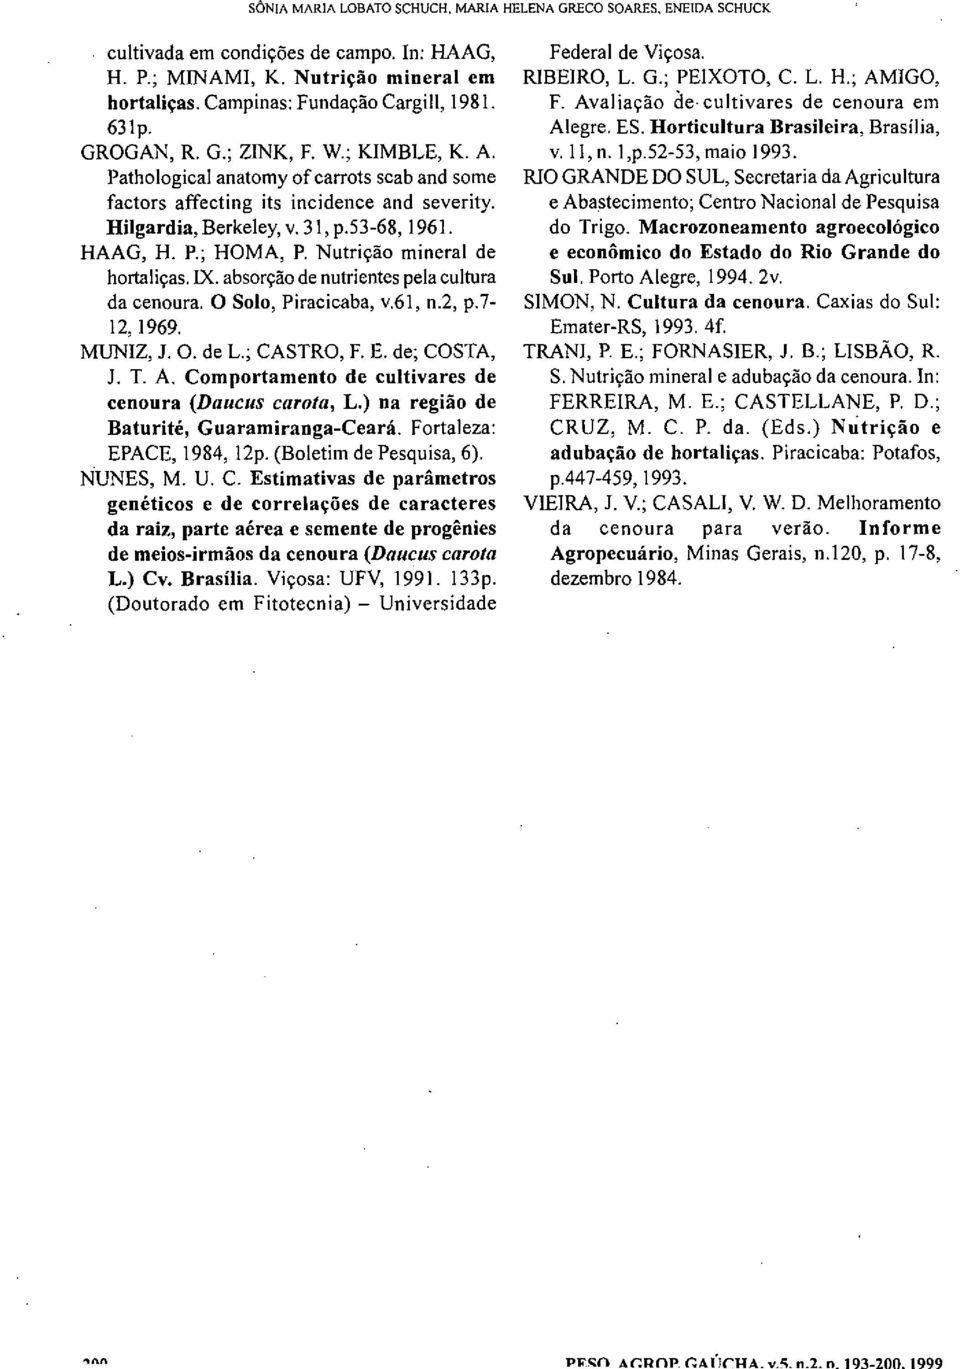 Nutrição mineral de hortaliças. IX. absorção de nutrientes pela cultura da cenoura. O Solo, Piracicaba, v.61, n.2, p.7-12, 1969. MUNIZ, J. O. de L.; CASTRO, F. E. de; COSTA, J. T. A.